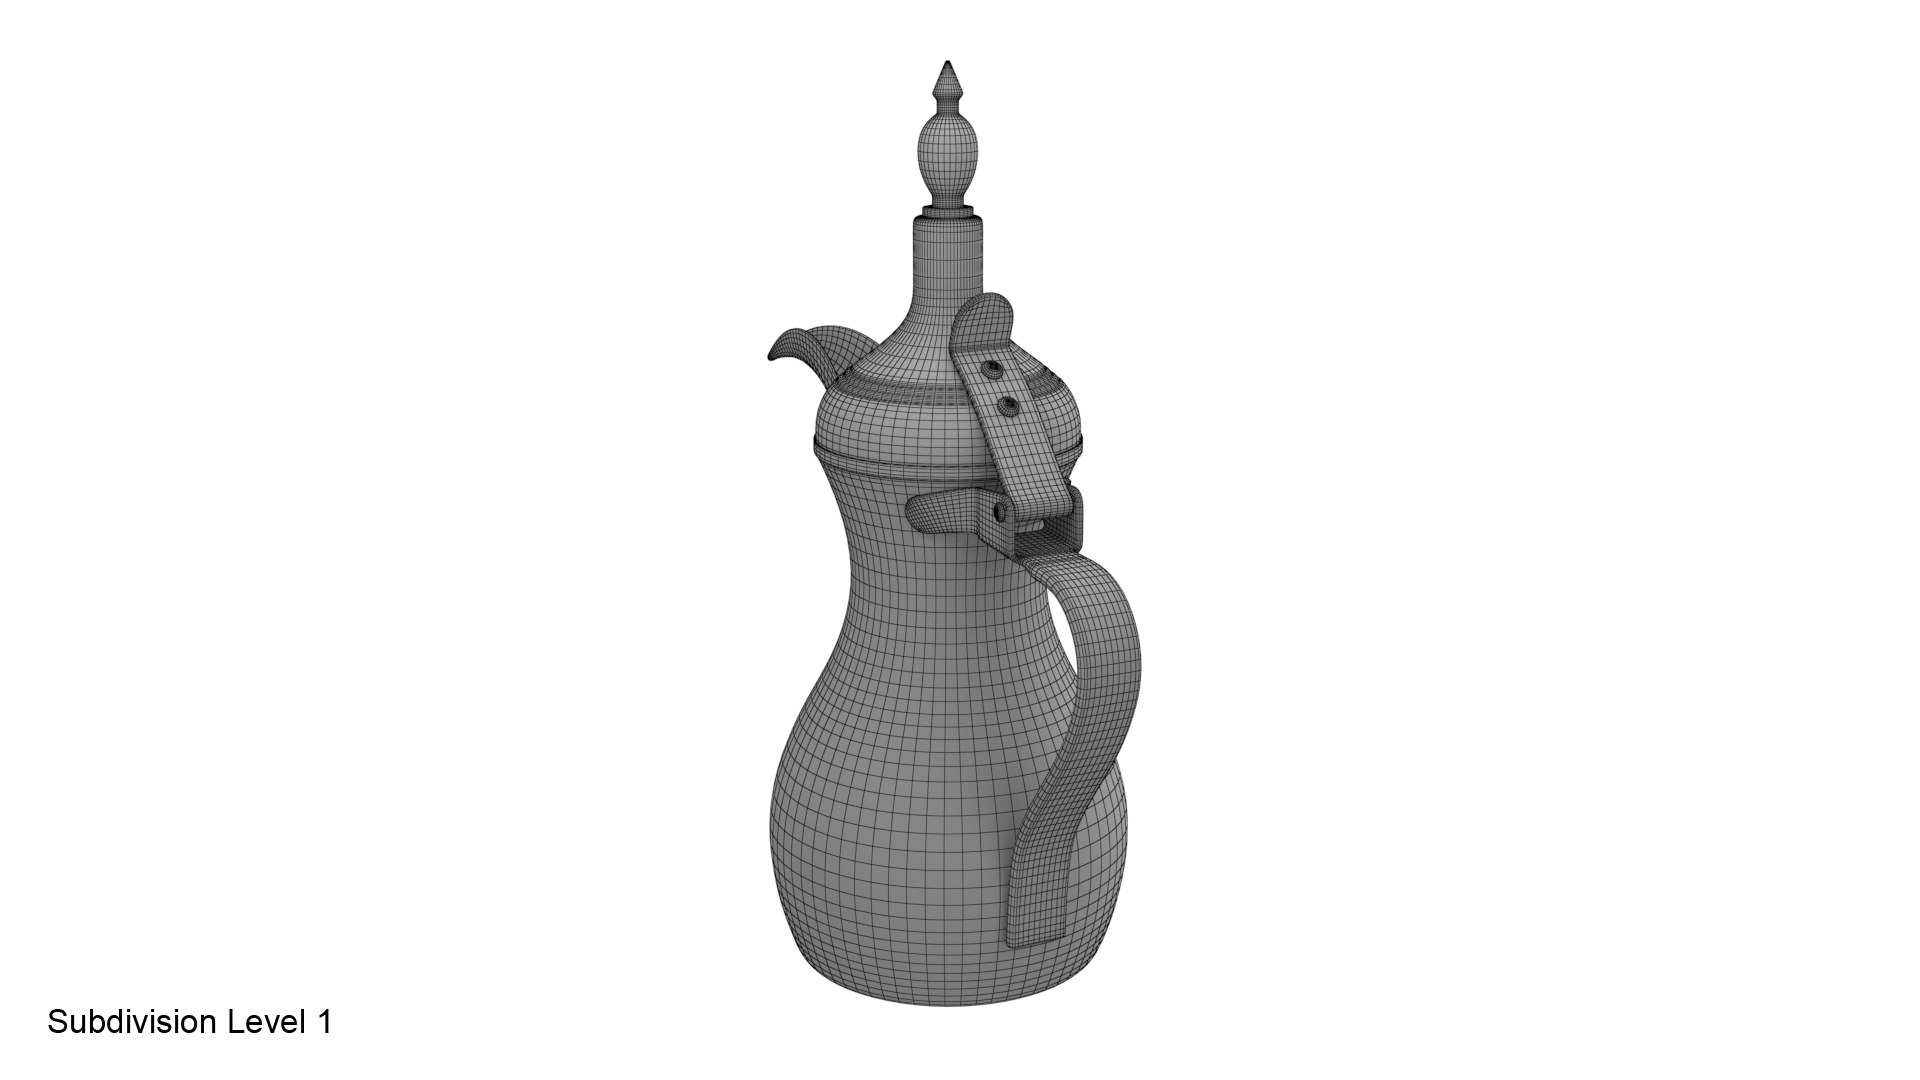 Arabic coffee pit 3D - TurboSquid 1579964